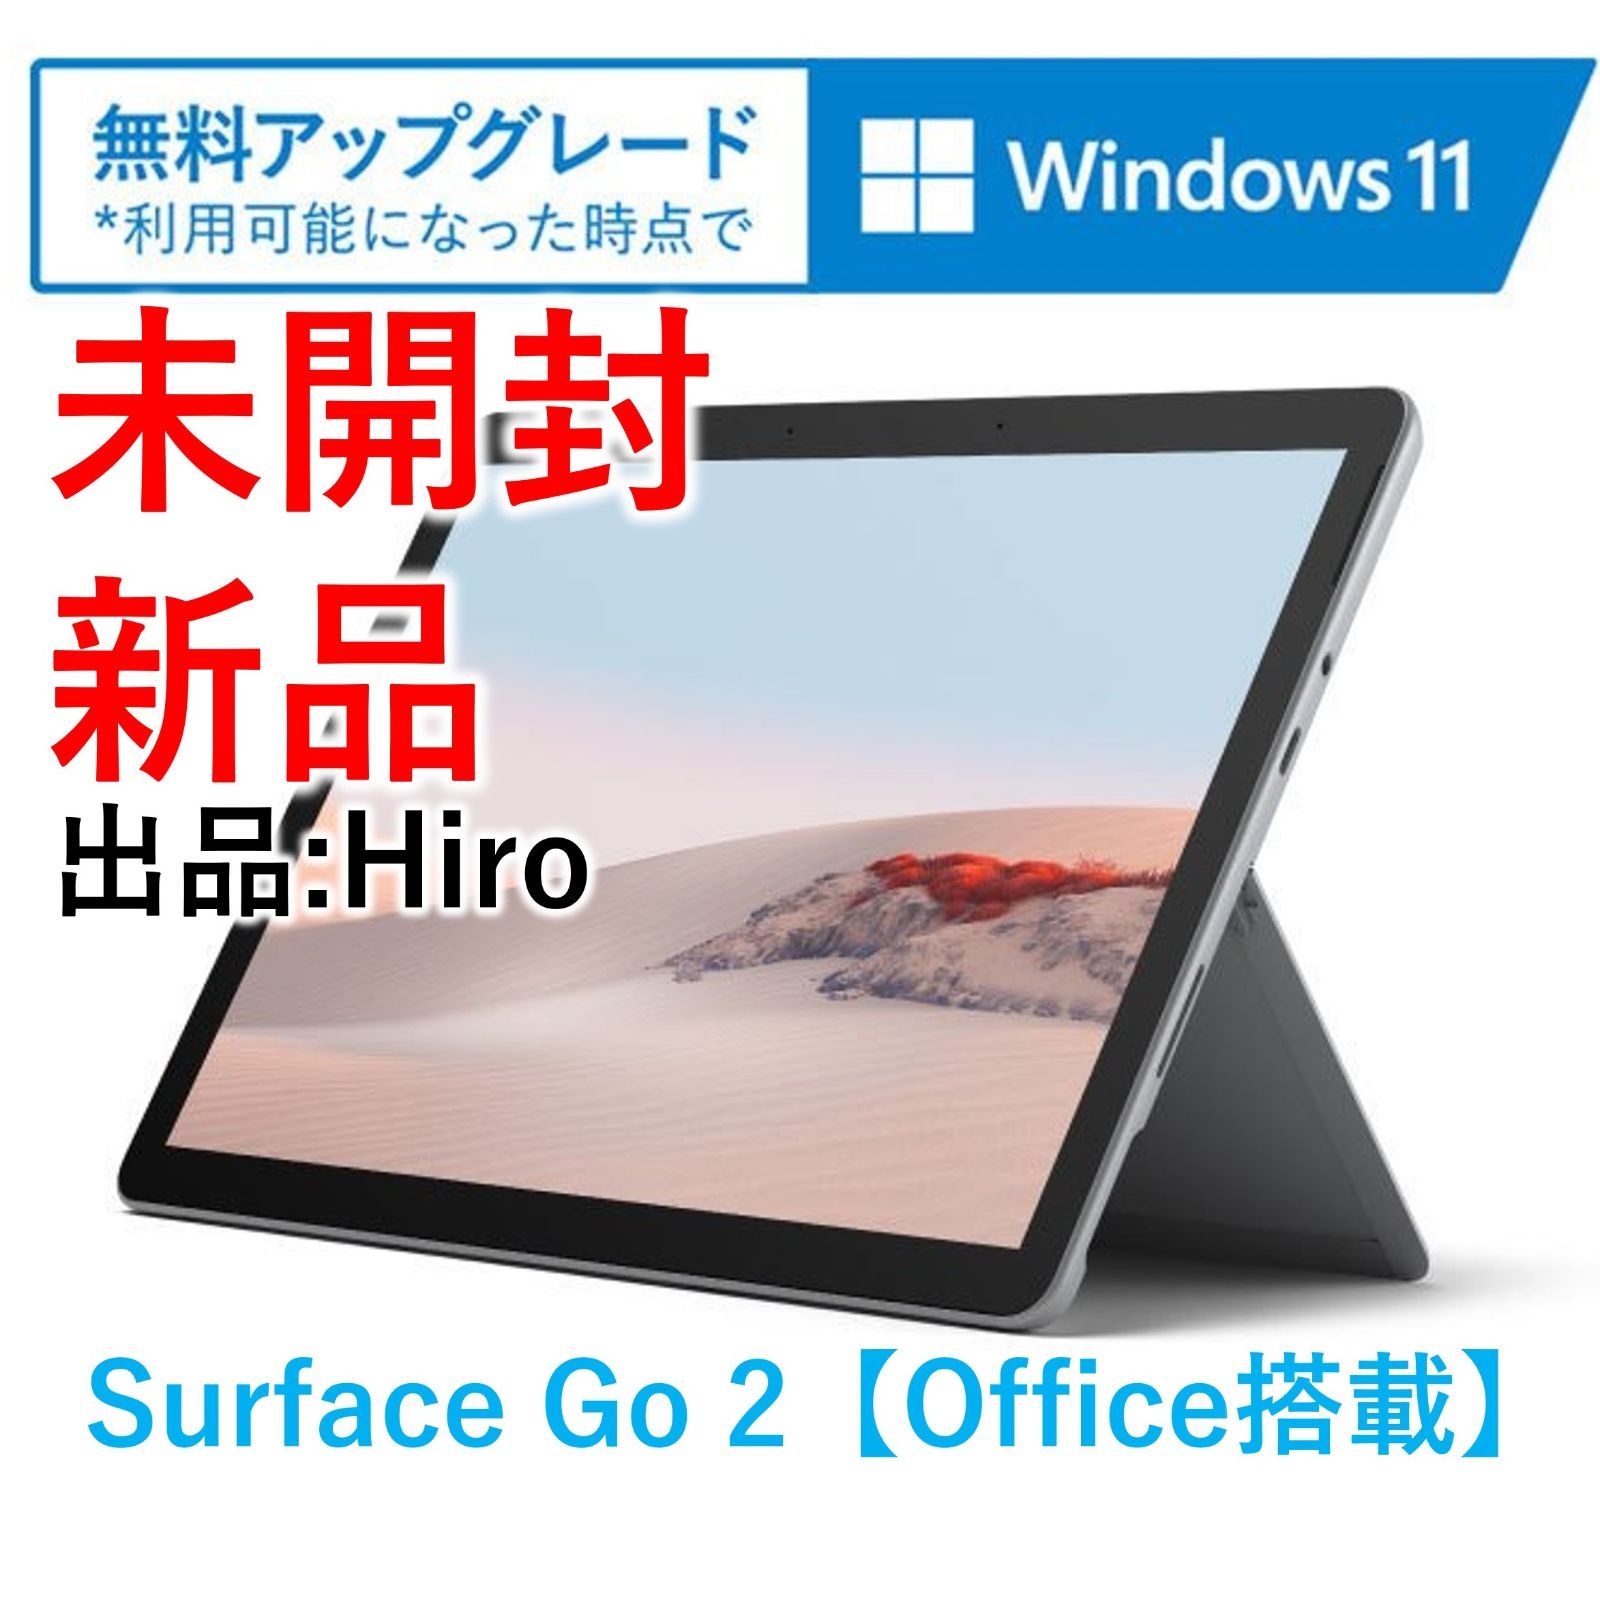 新品未開封 Surface Go2 STV-00012 オフィス付き